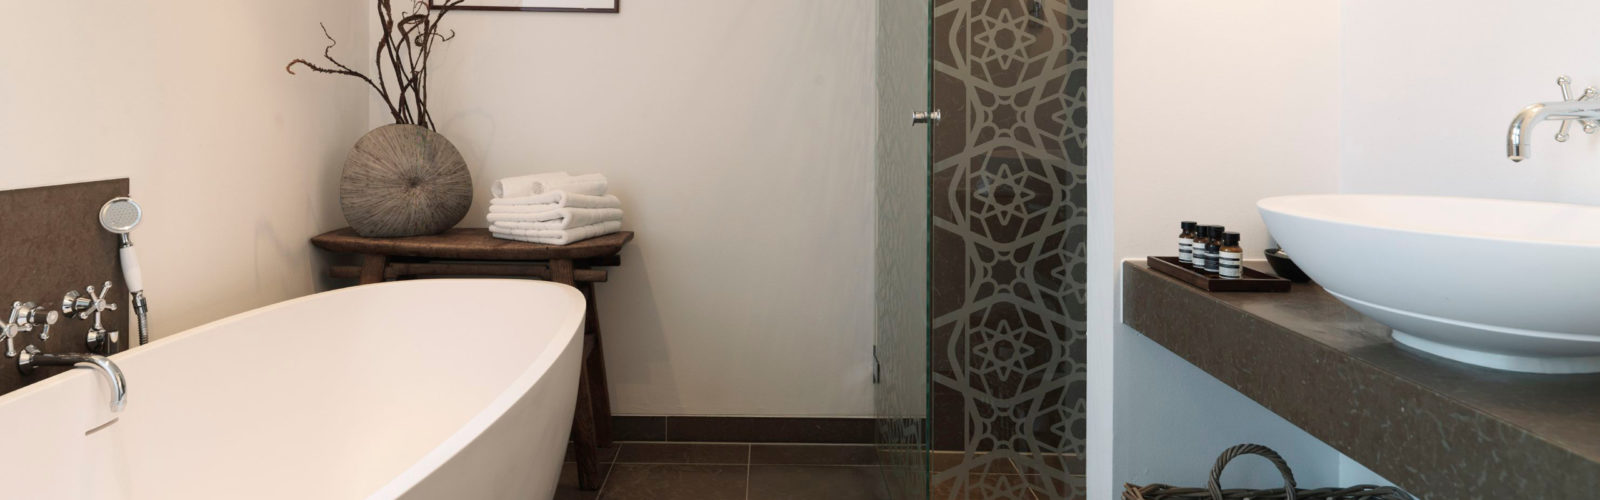 nimb-hotel-bathroom